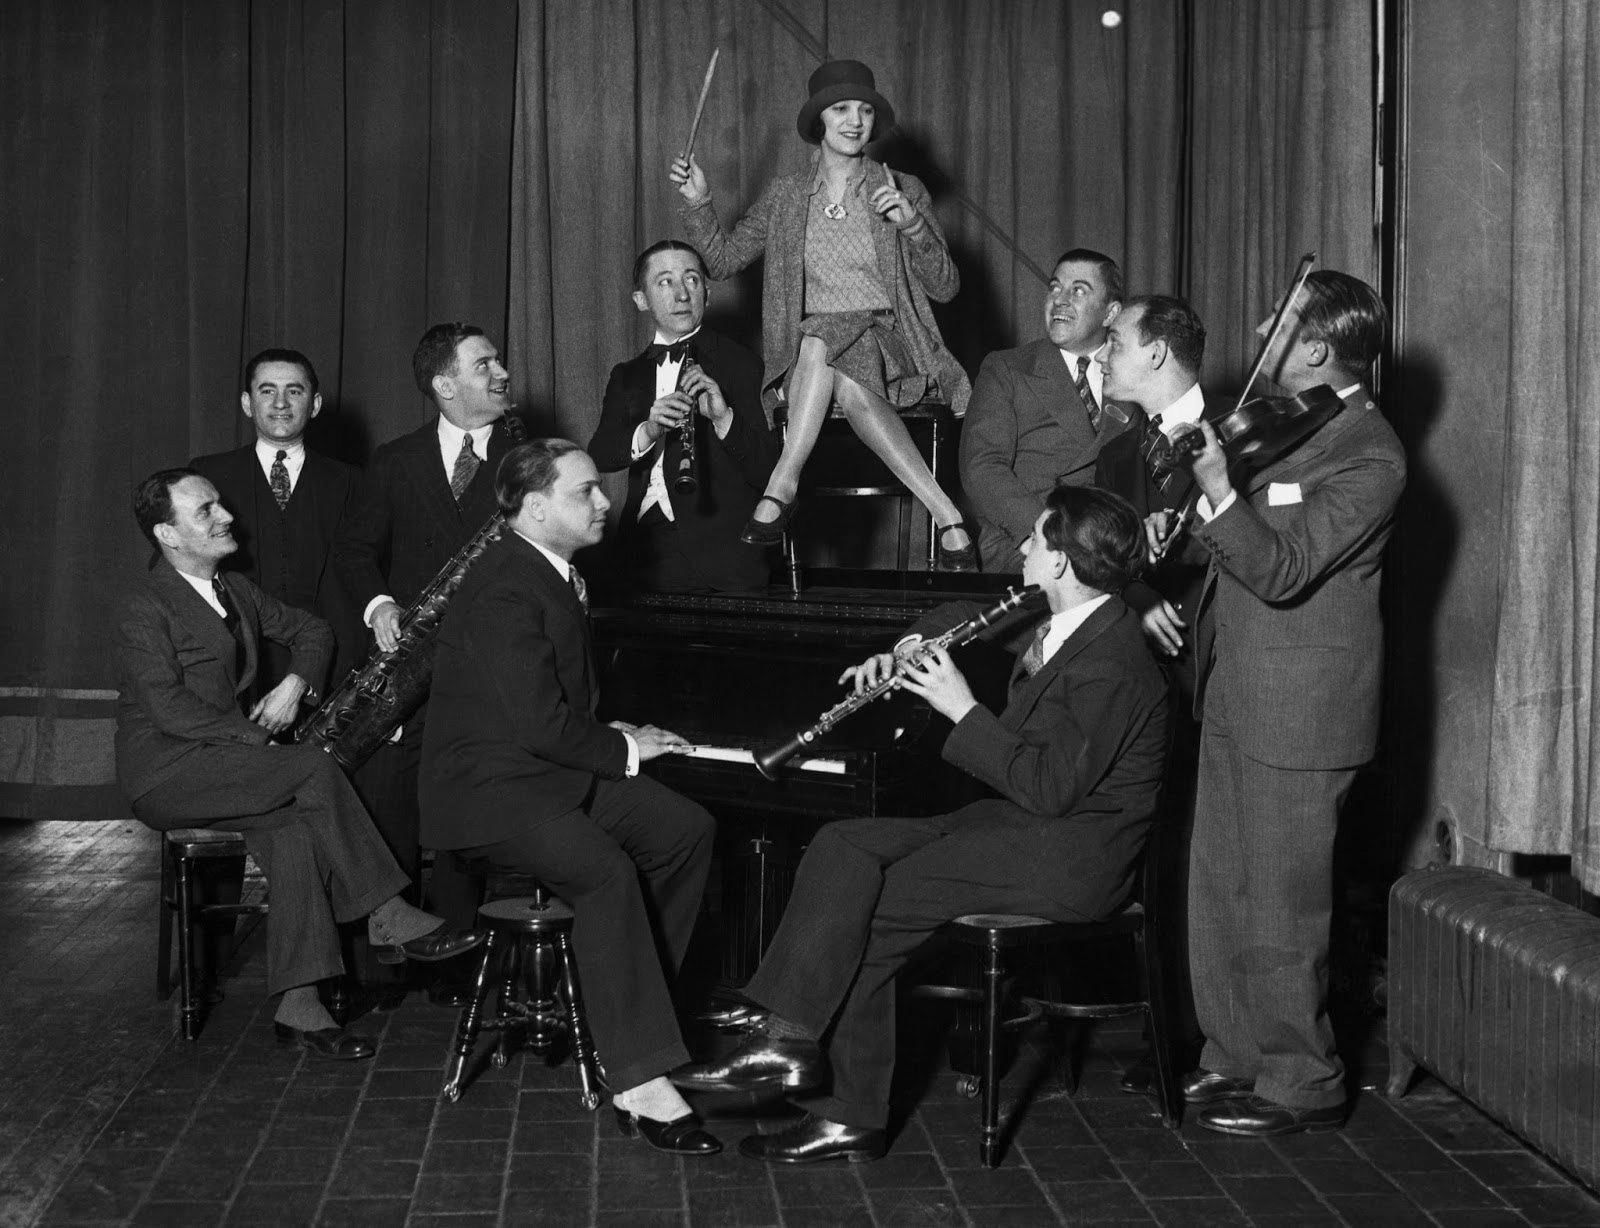 Джаз-бэнд 20 век. Музыканты Америки 20 века. Джаз в США 1920-Е годы. Джаз в Америке 20 век.